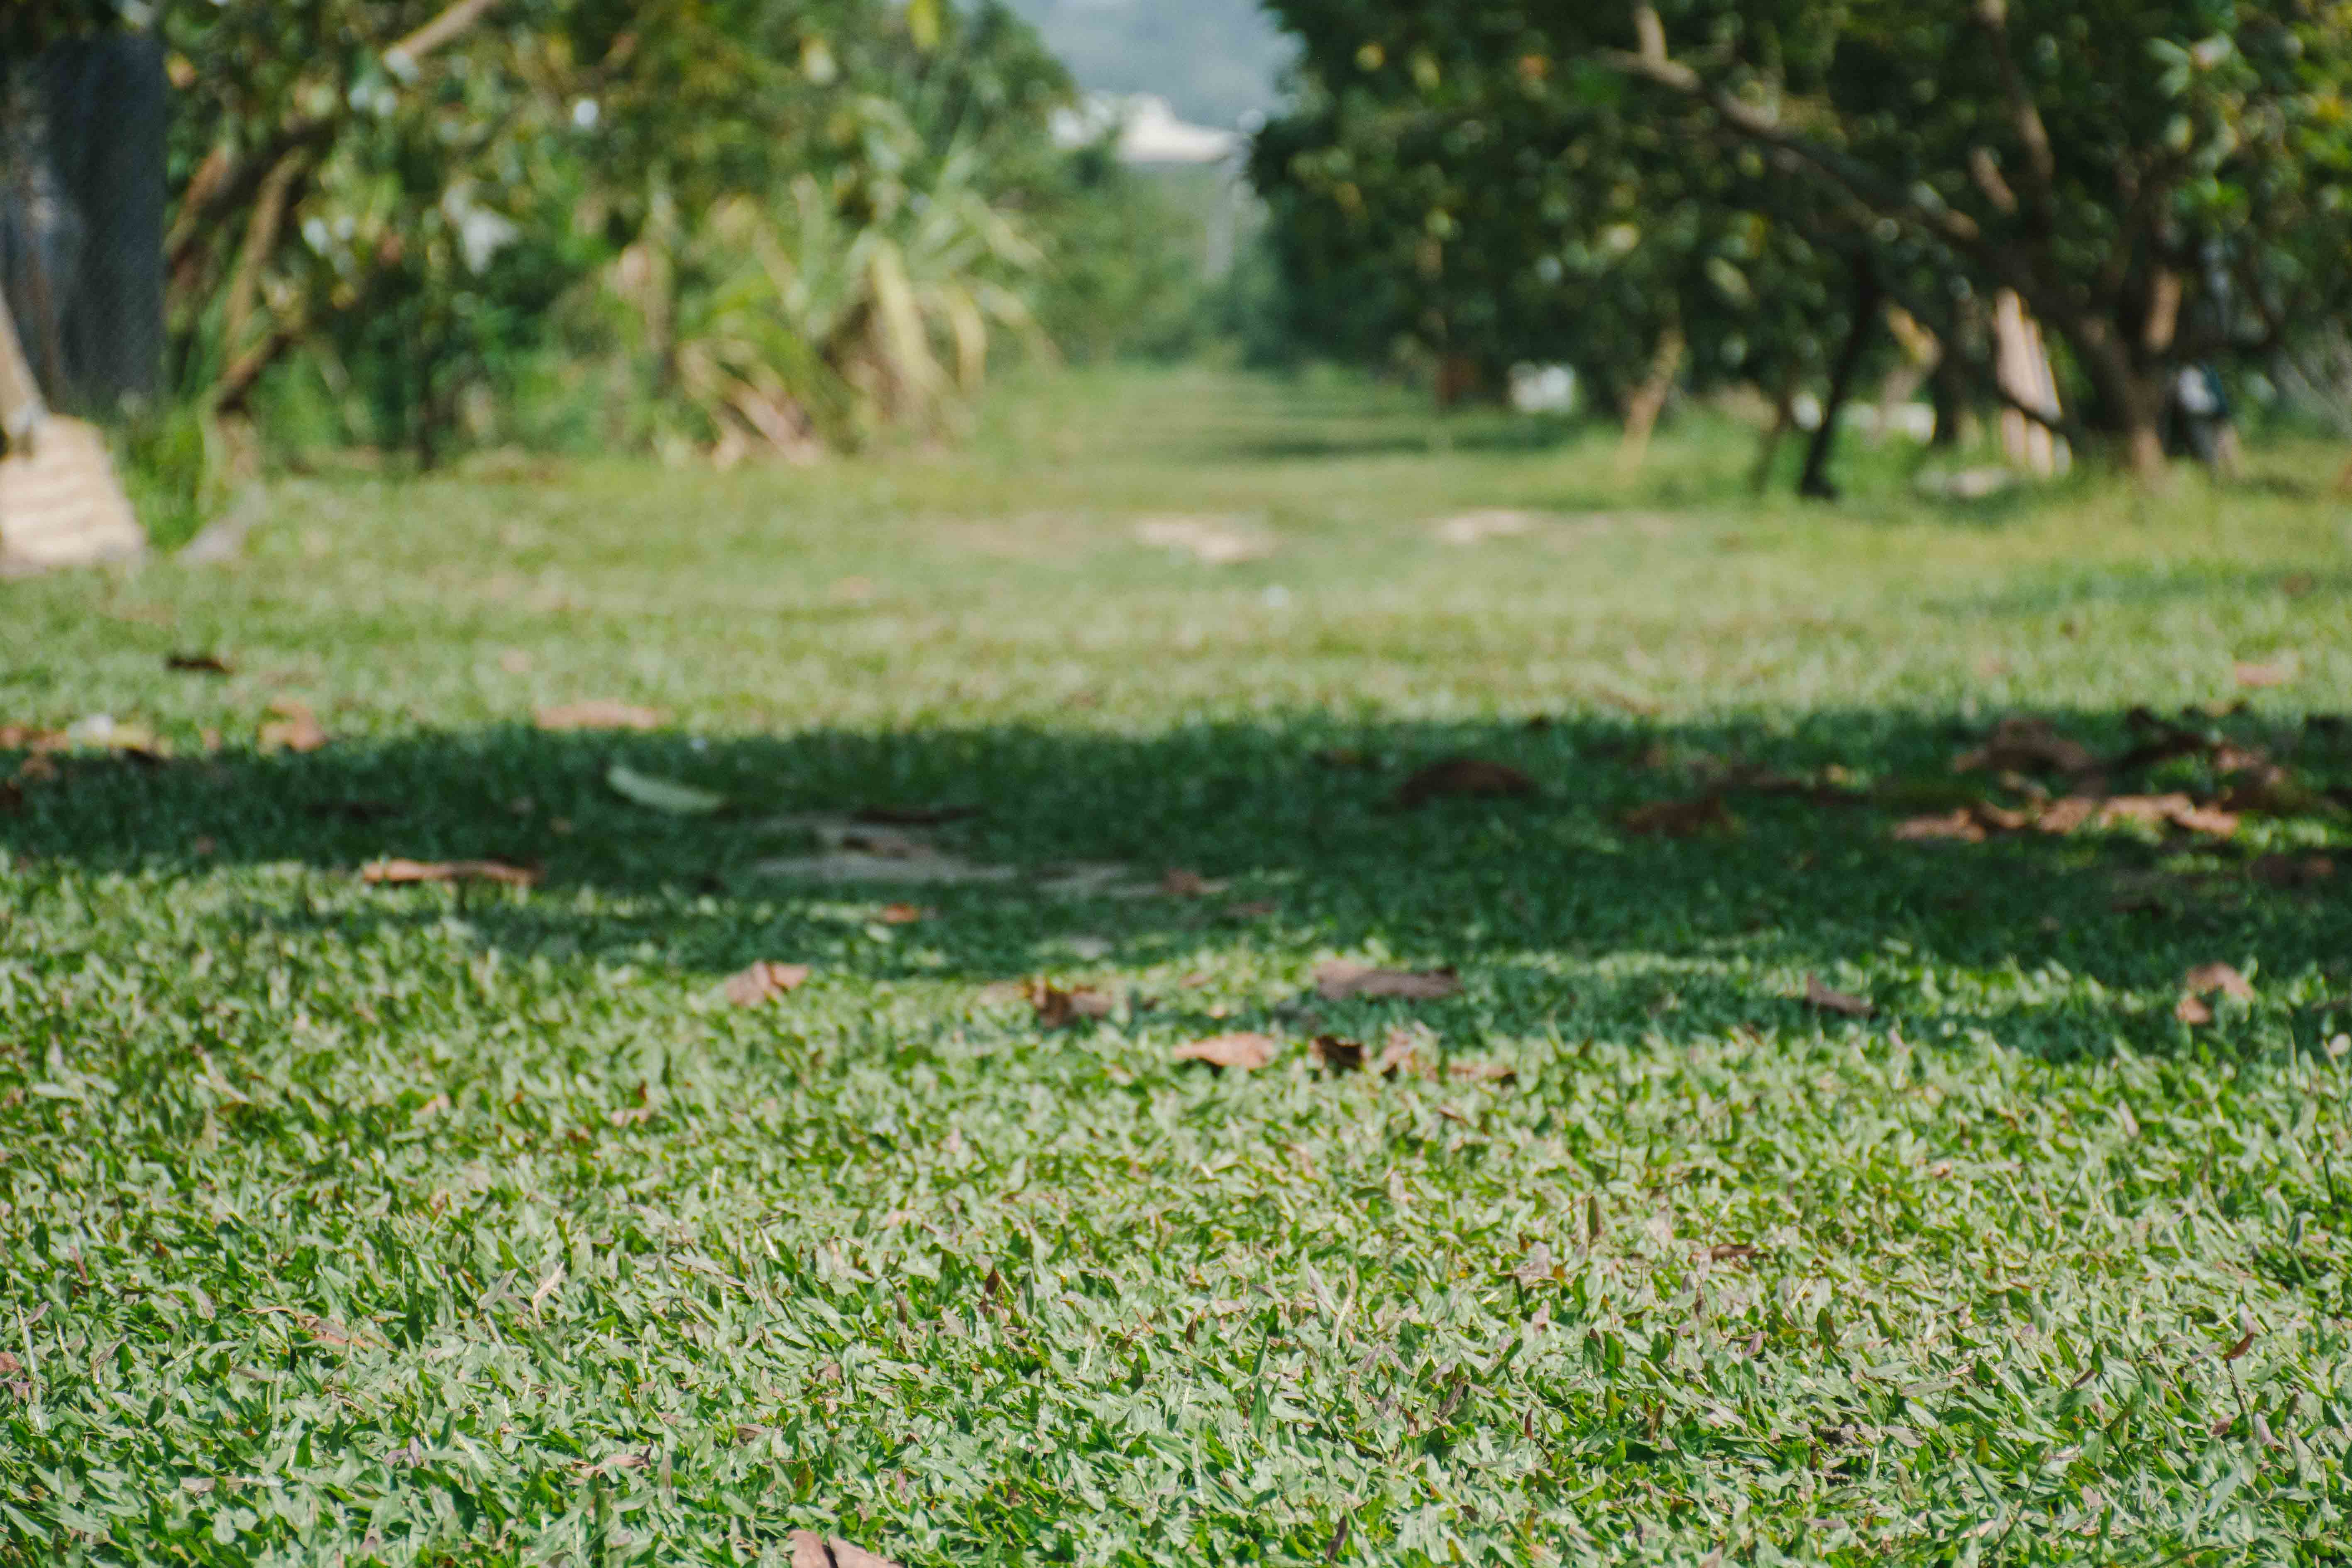 酪梨 有機 自然 台南 大內 無毒 健康 養生 幸福果 奶油果 左岸 幸福 莊園